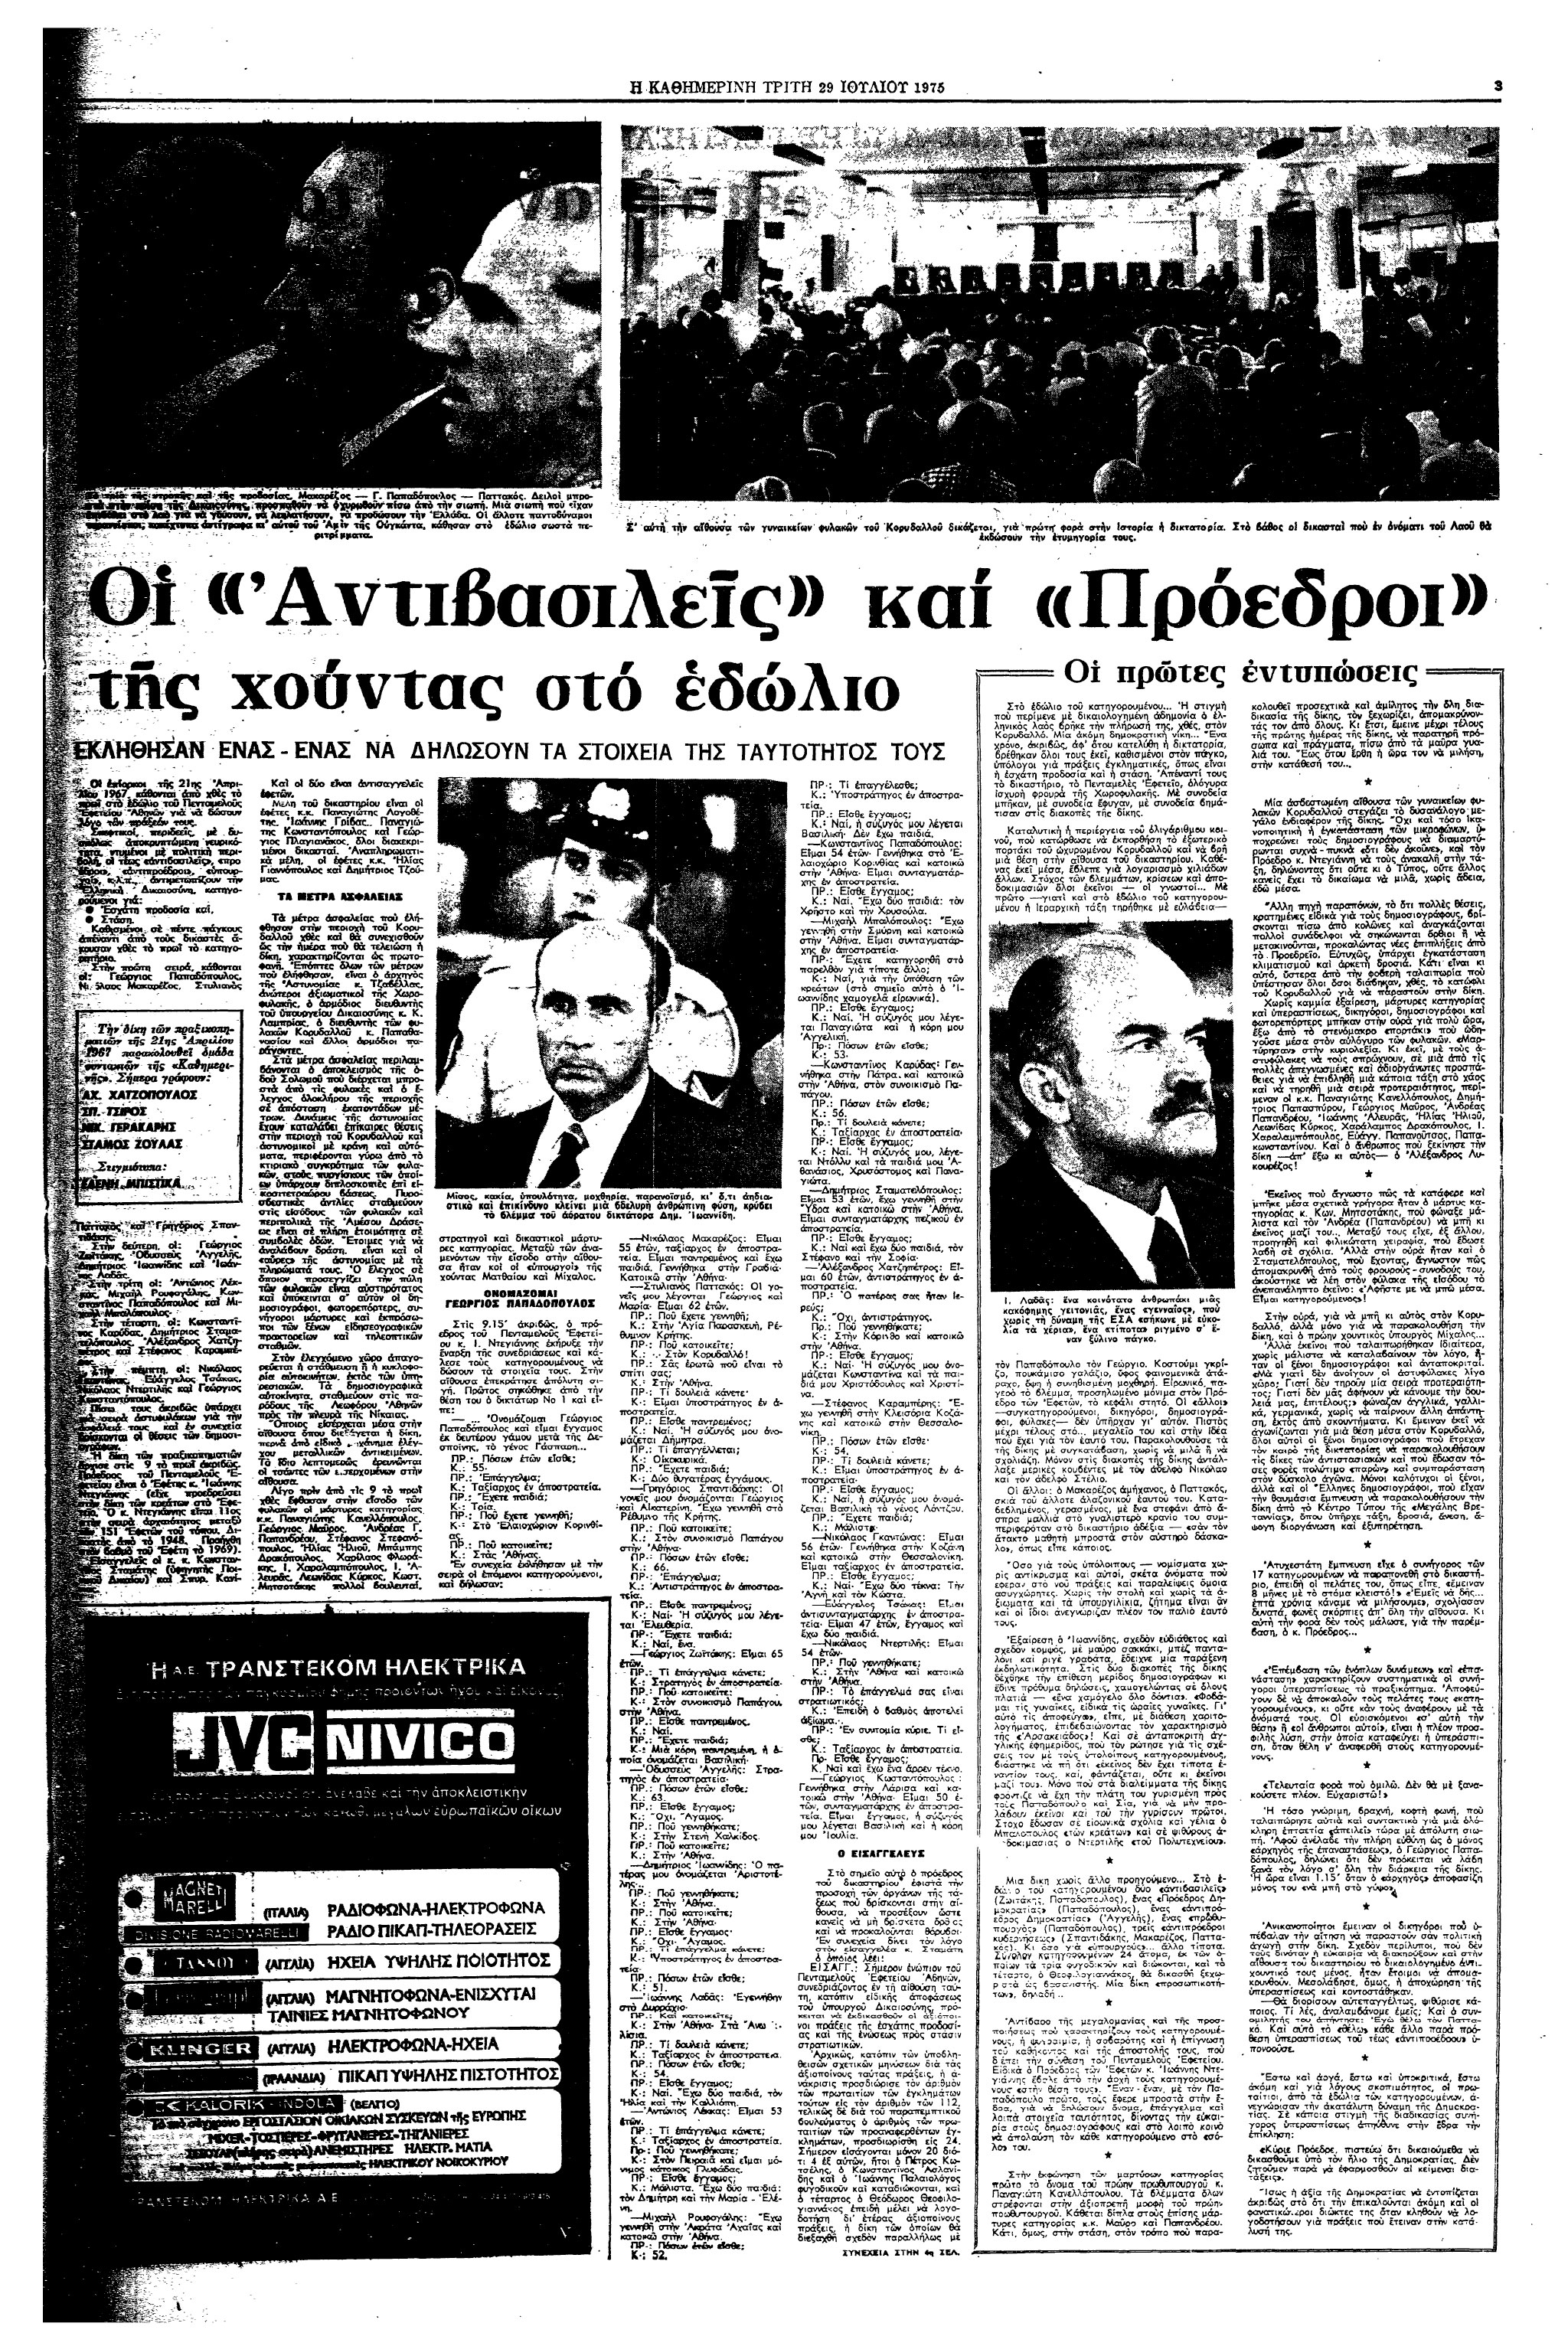 Σαν σήμερα: 28 Ιουλίου 1975 – Ξεκινά η δίκη των πρωταιτίων της χούντας-2